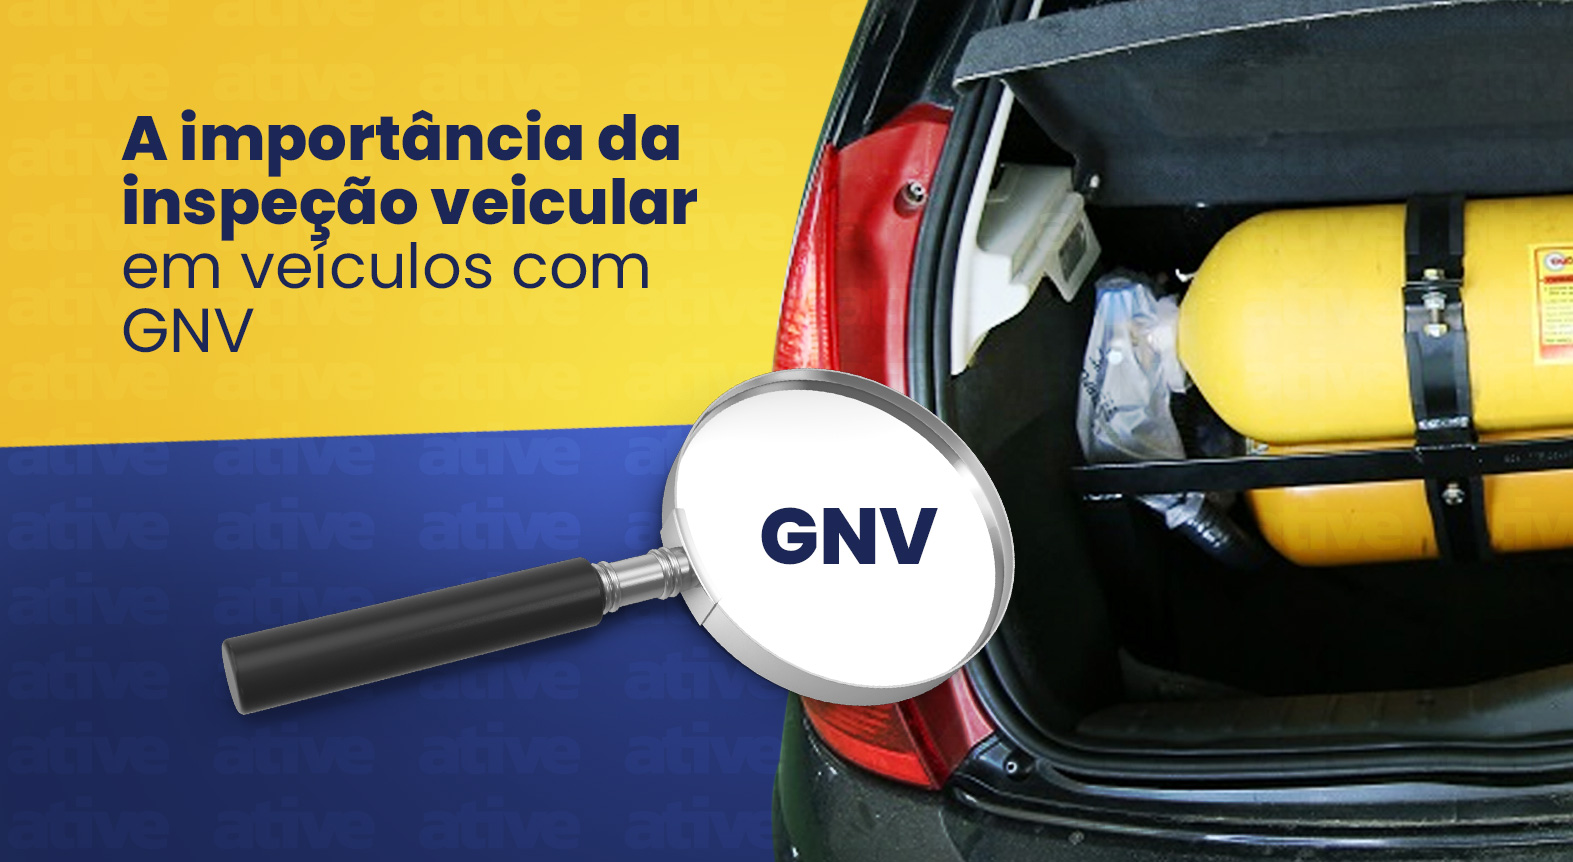 A importância da inspeção veicular em veículos com GNV